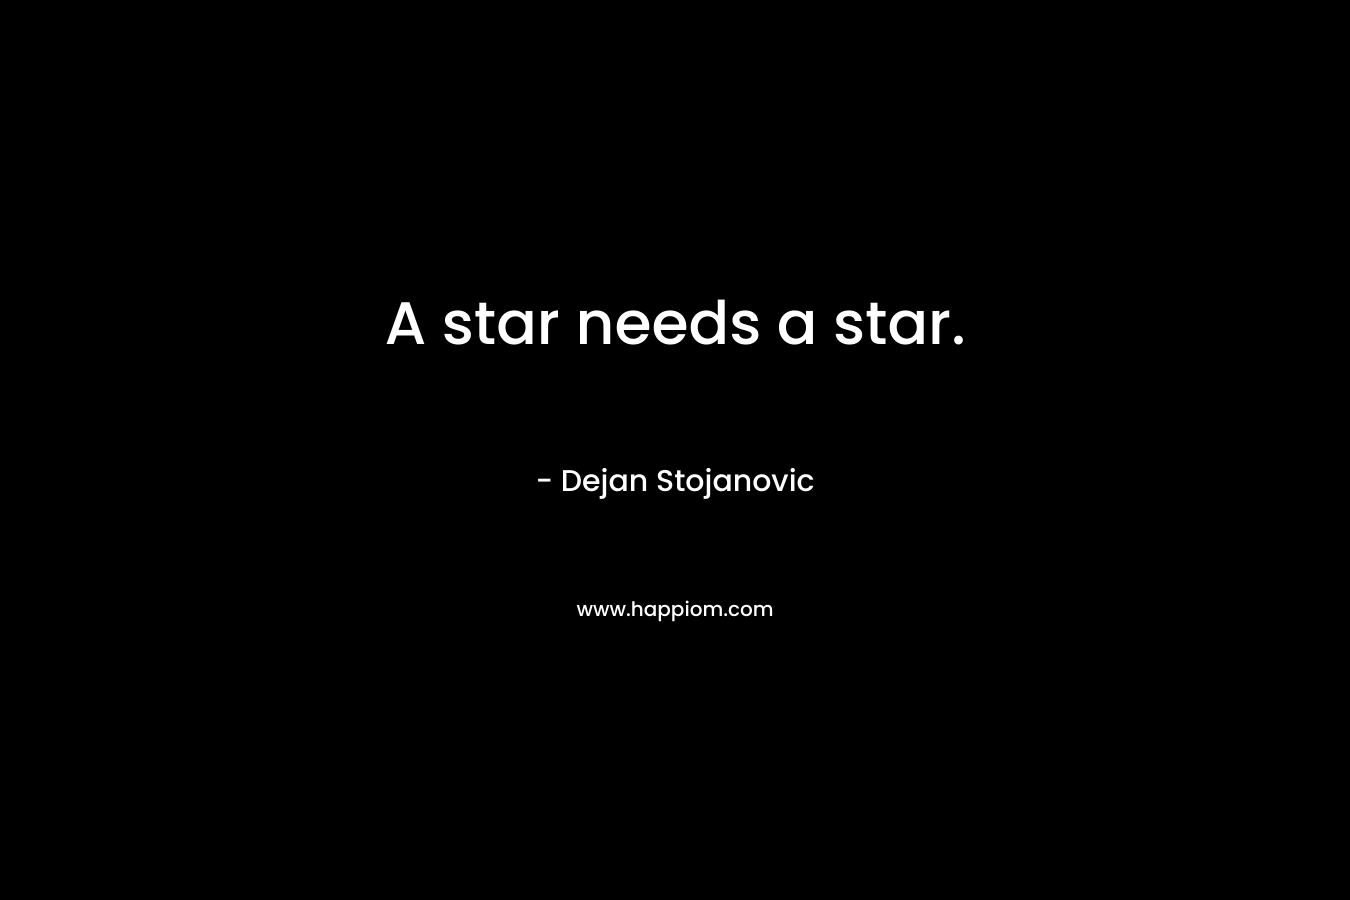 A star needs a star.